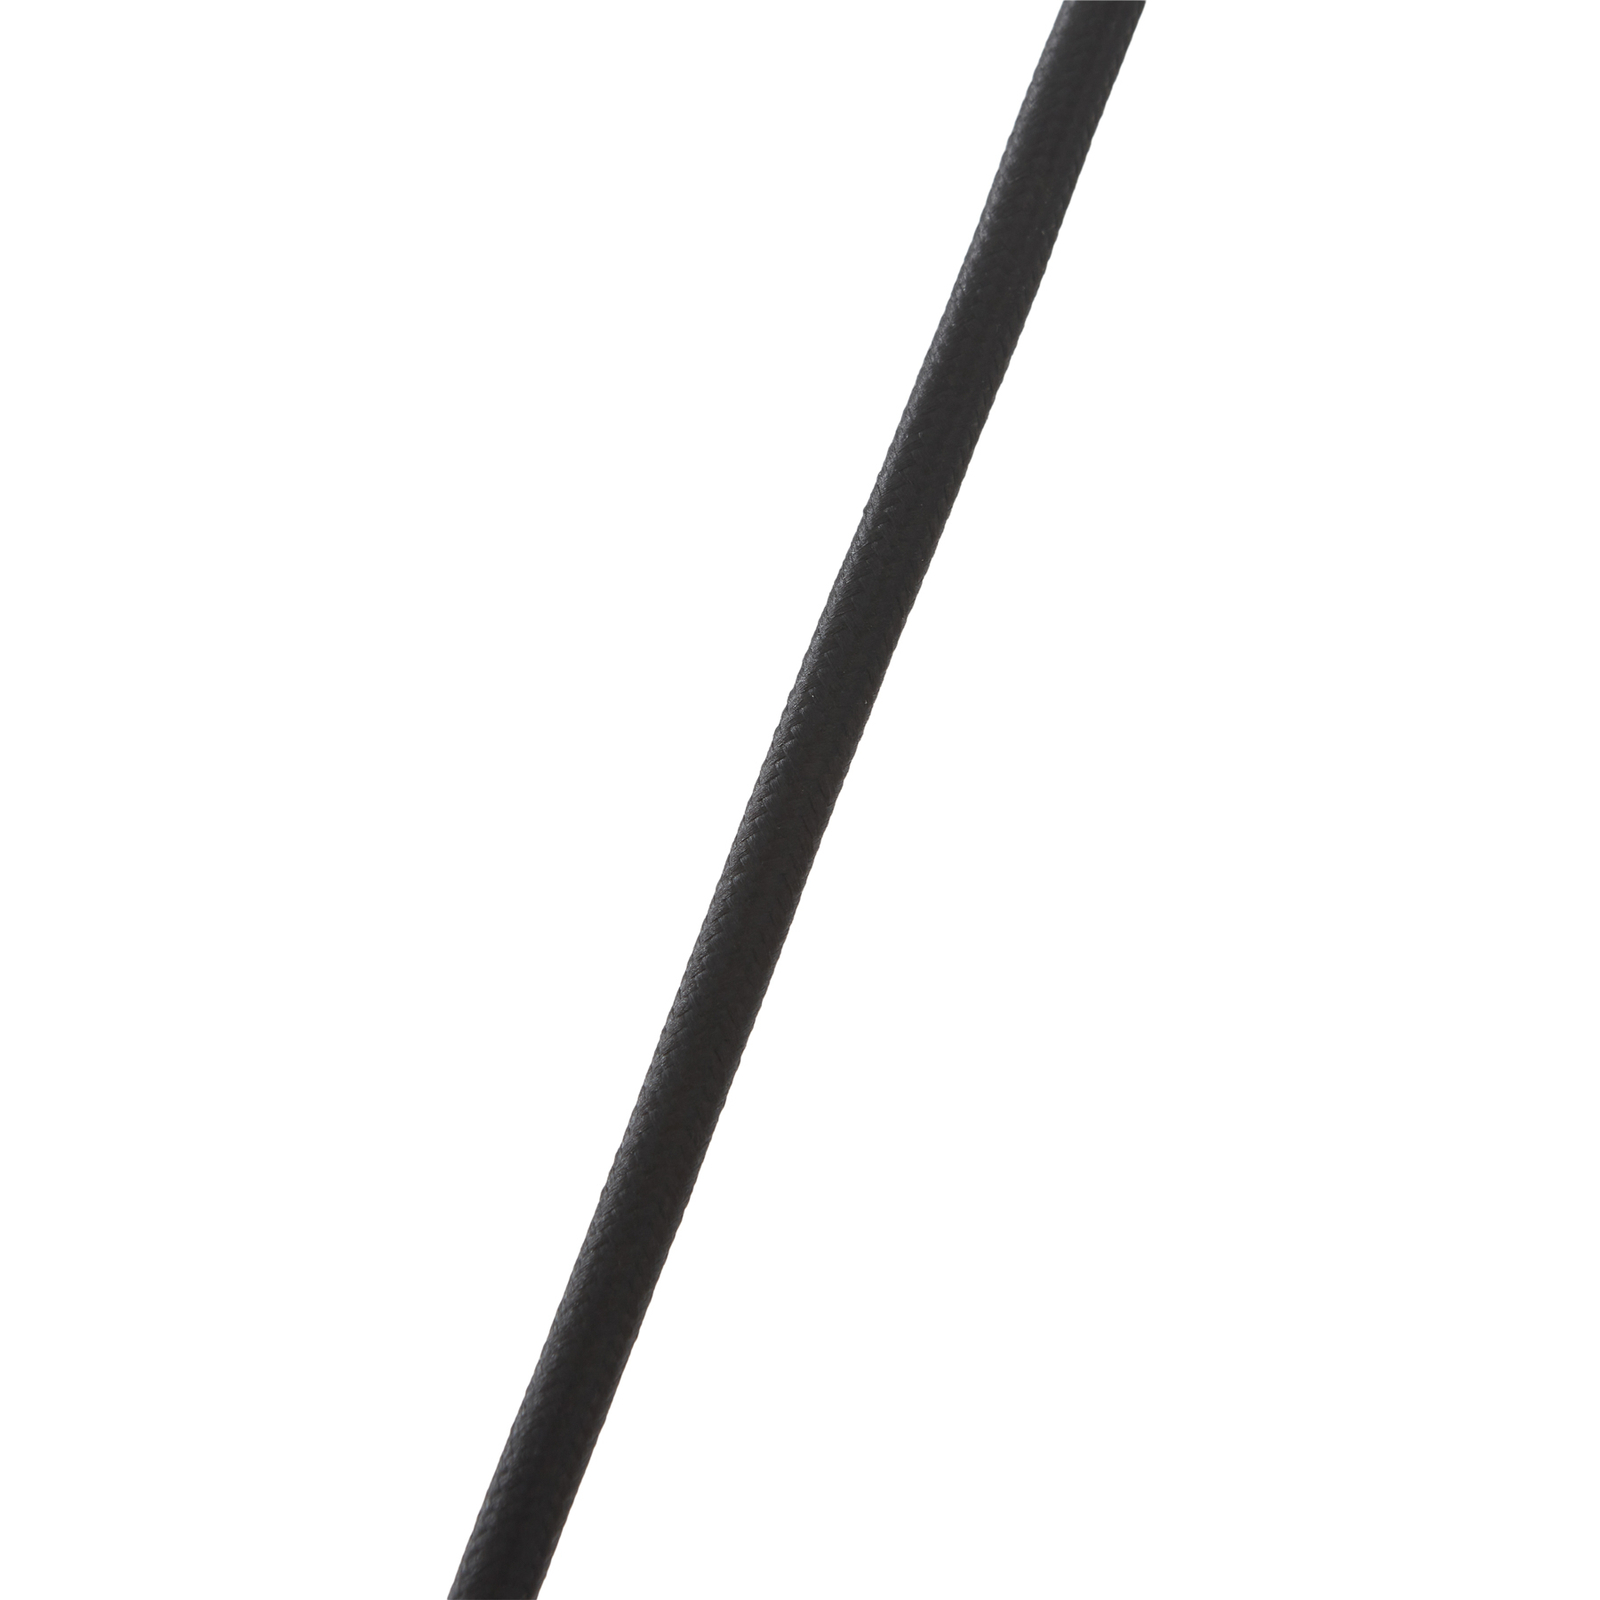 Lucande hanglamp Aeloria, koper, Ø 45 cm, ijzer, E27